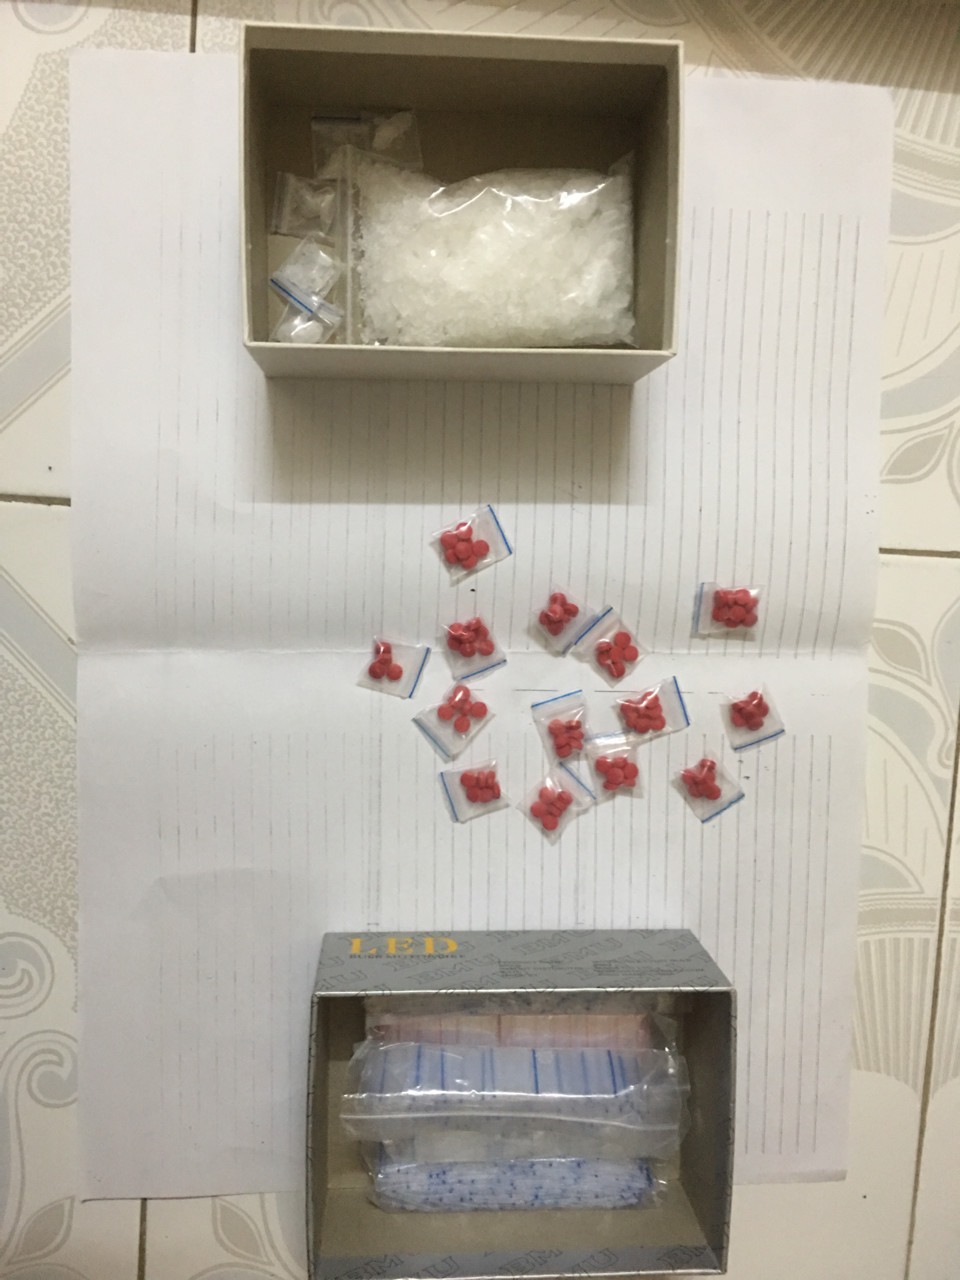 Hà Nội: Bị đưa về phường xử phạt, người đàn ông "lộ" nhiều ma túy giấu trong túi quần - Ảnh 2